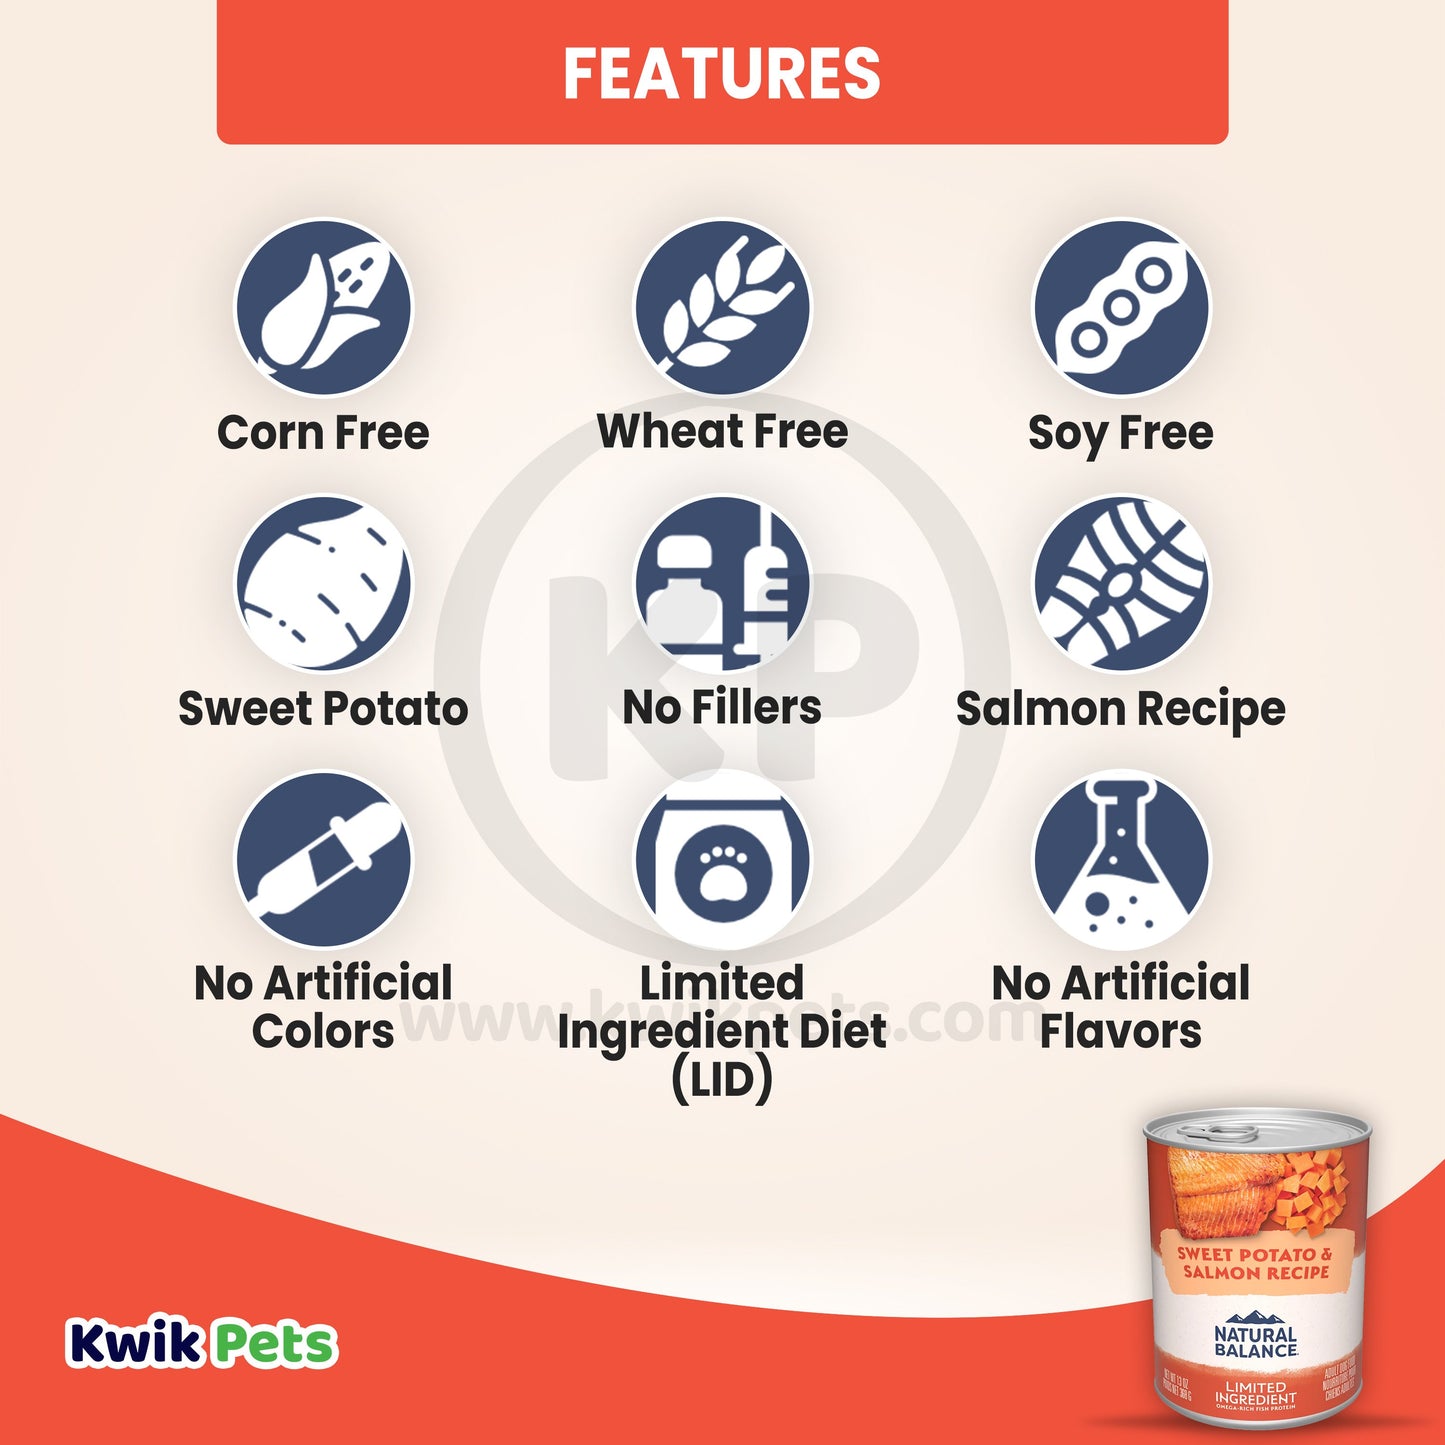 Natural Balance Pet Foods L.I.D Fish & Sweet Potato Formula Canned Dog Food 13 oz, Natural Balance